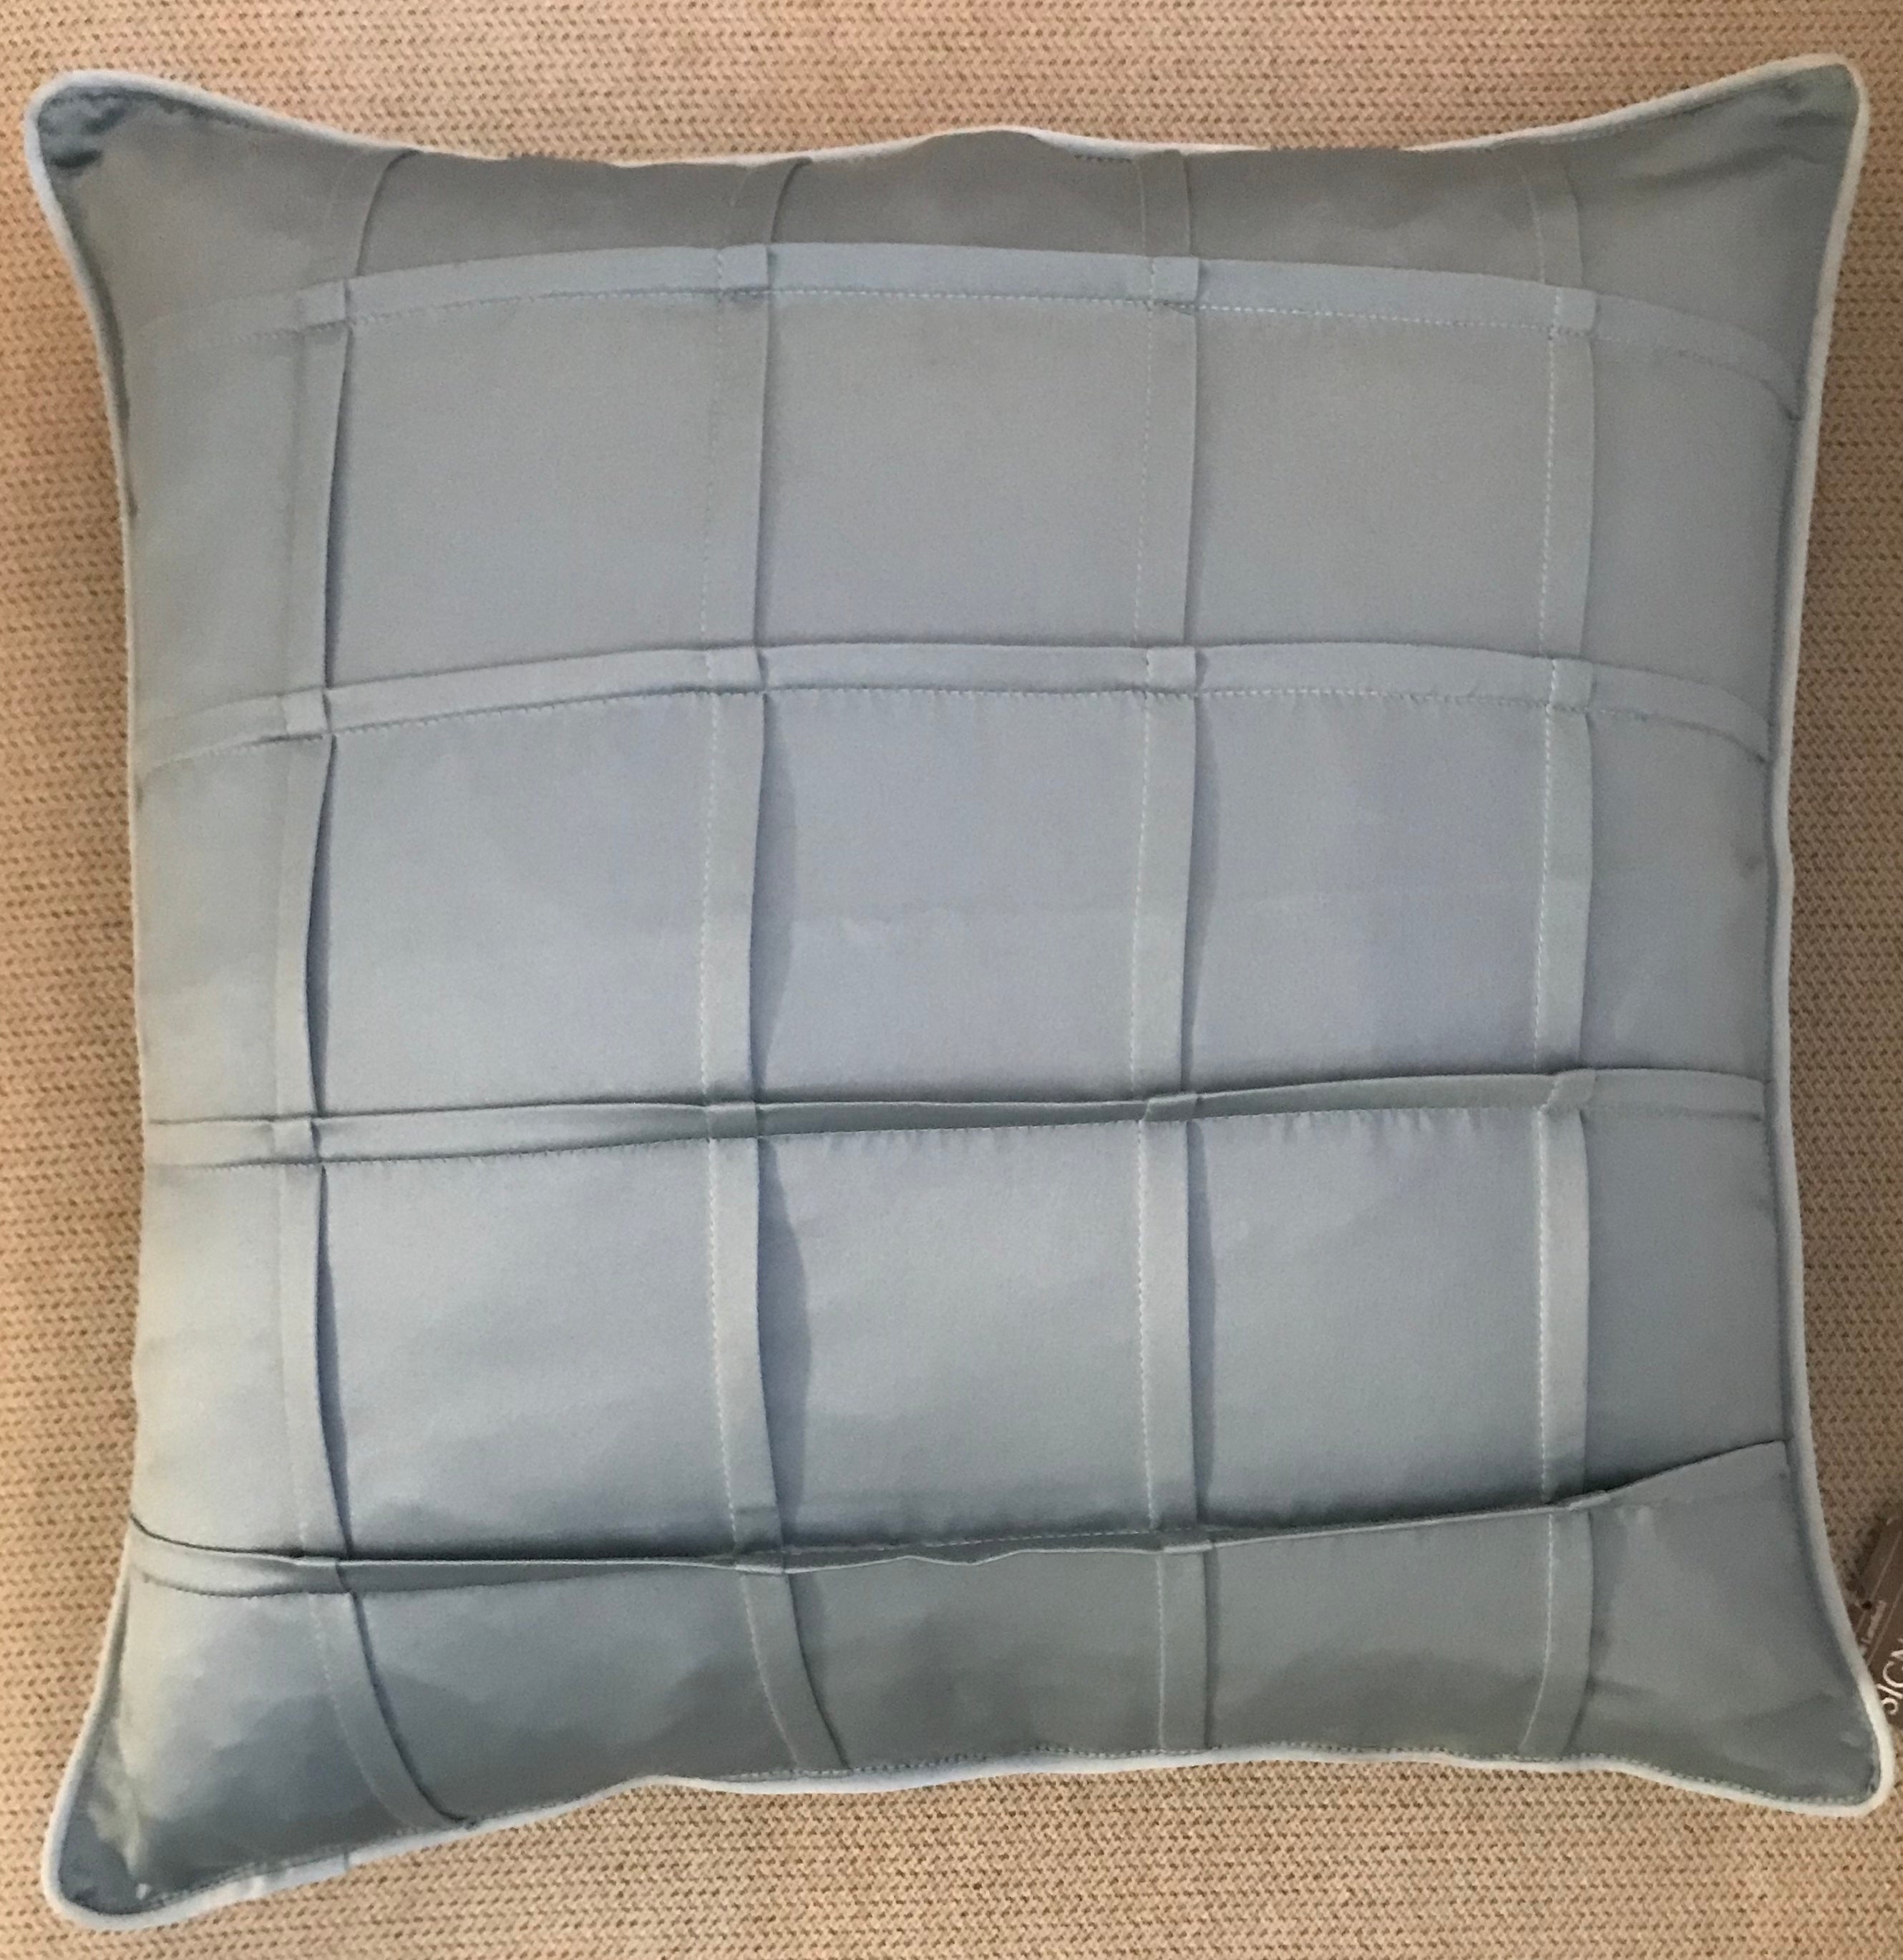 Luxor Teal Cushion Cover, 45 x 45cm